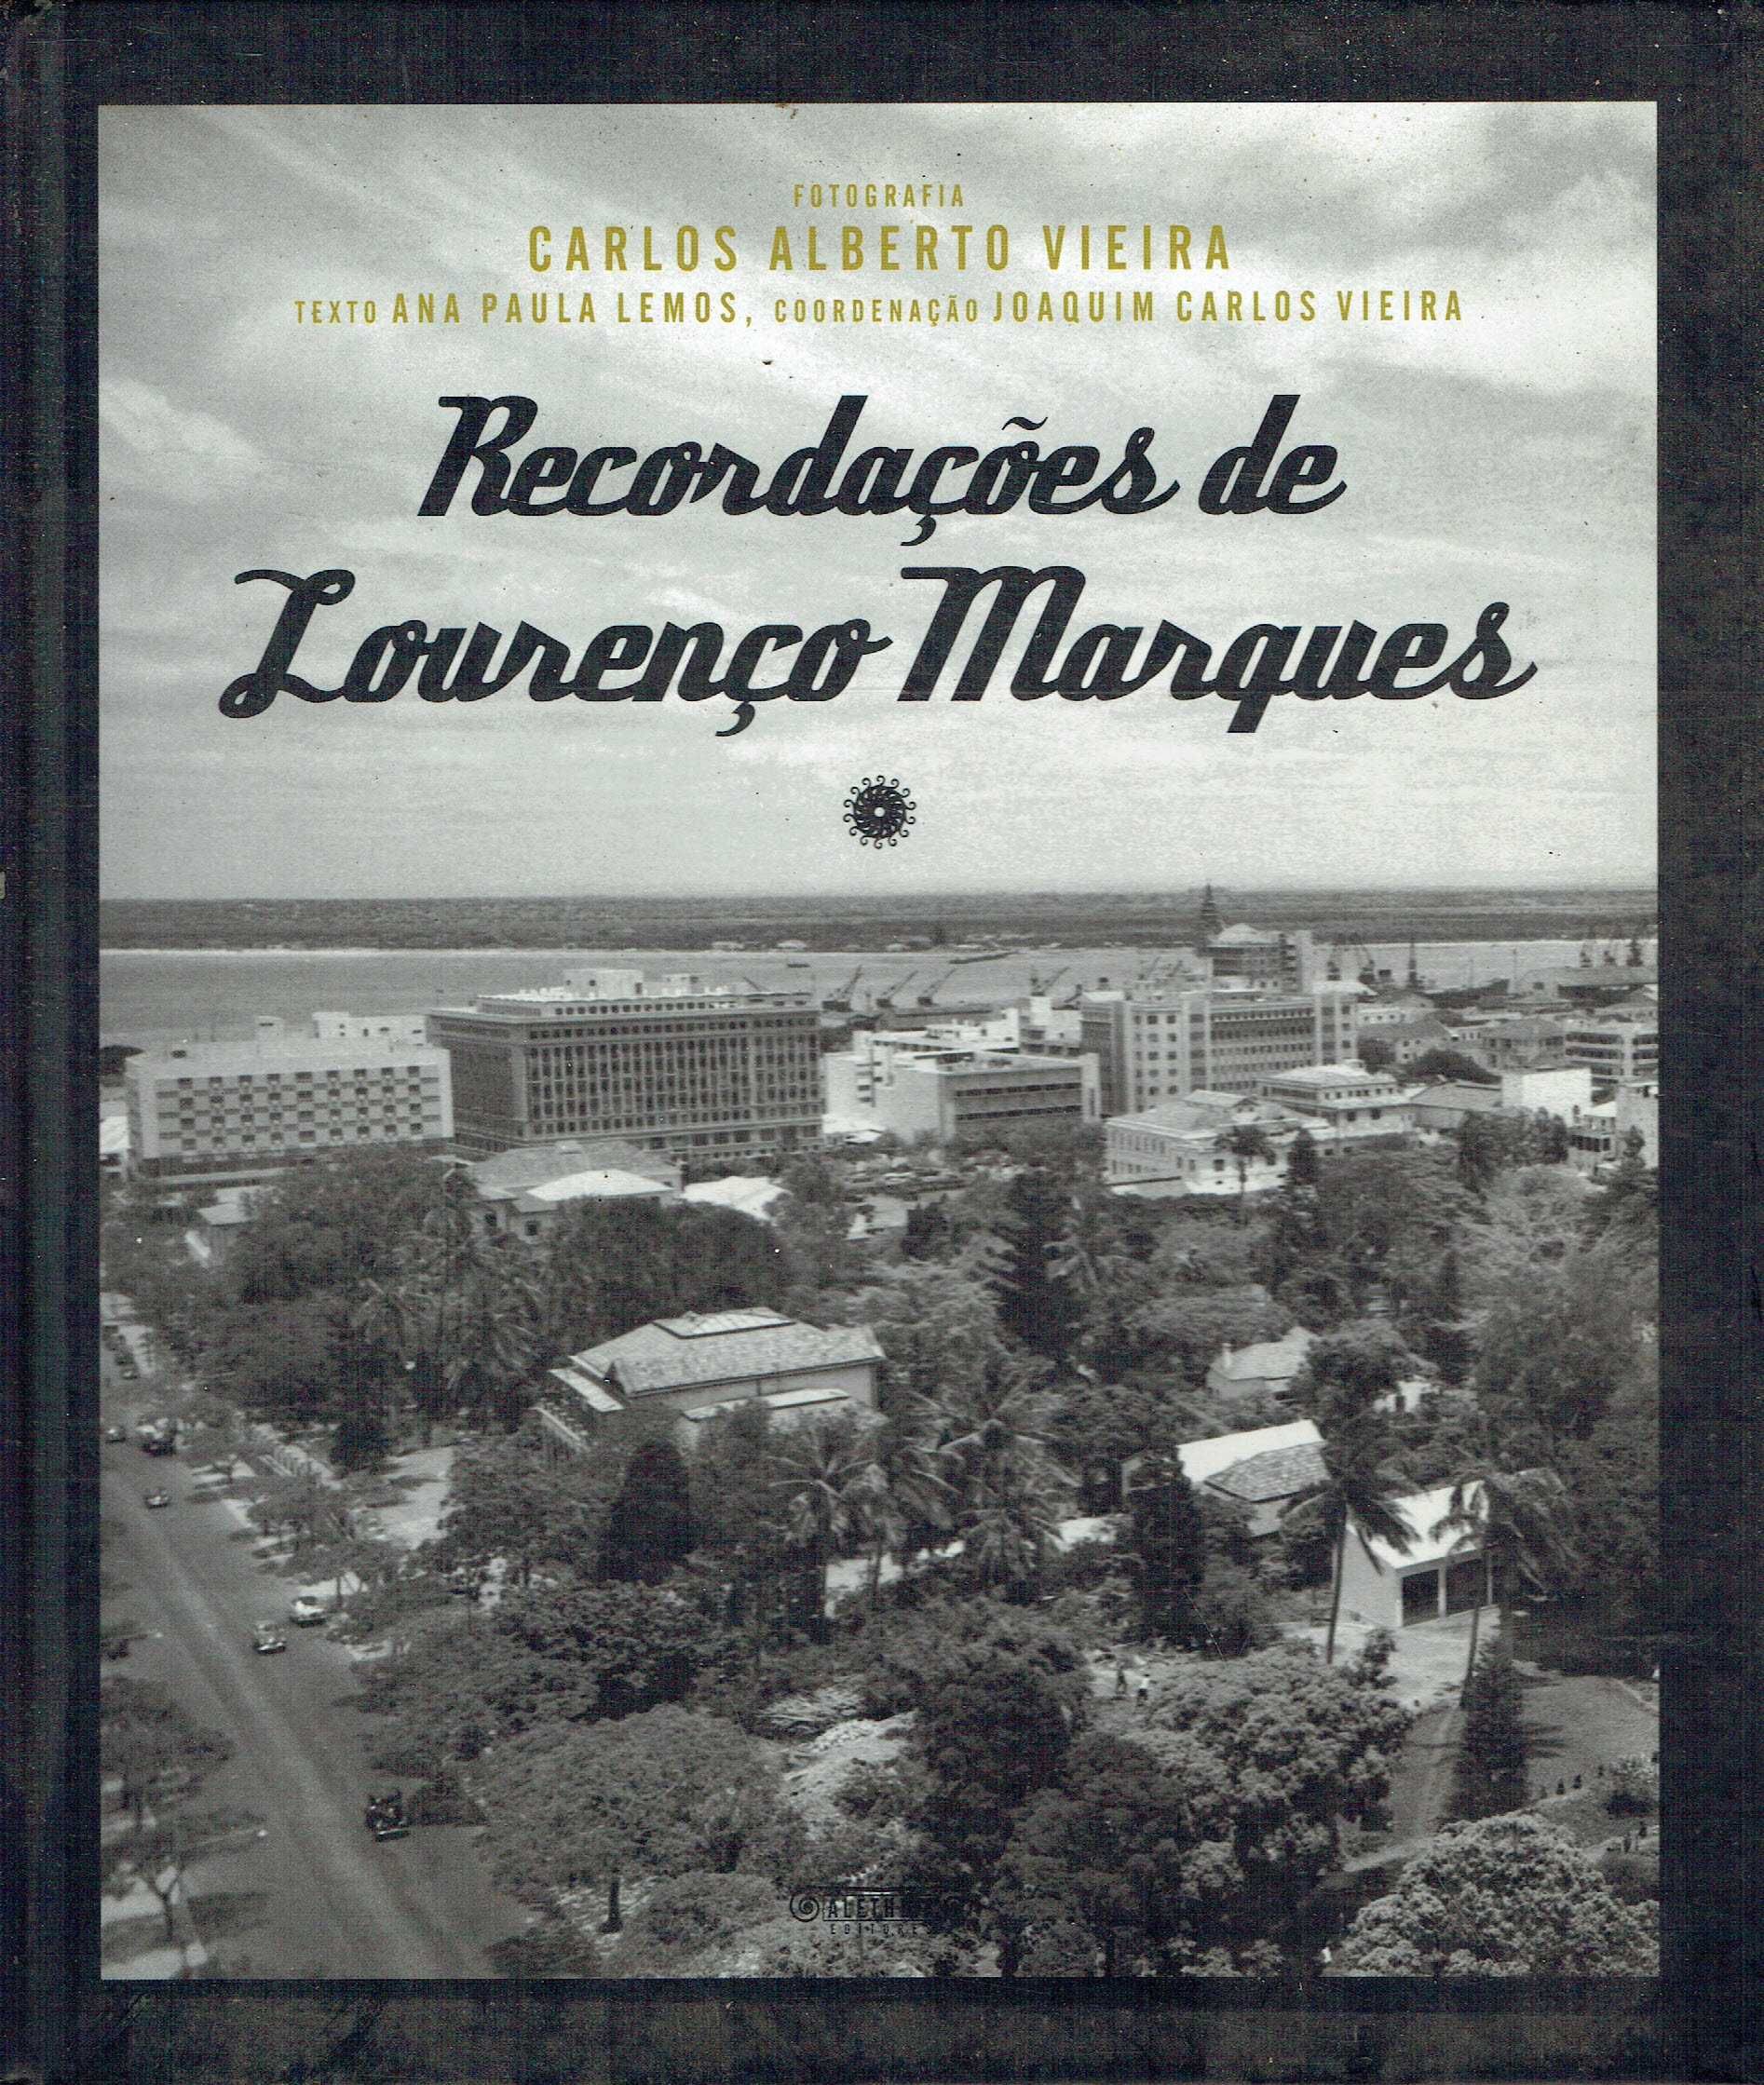 92

Recordações de Lourenço Marques
de Ana Paula Lemos